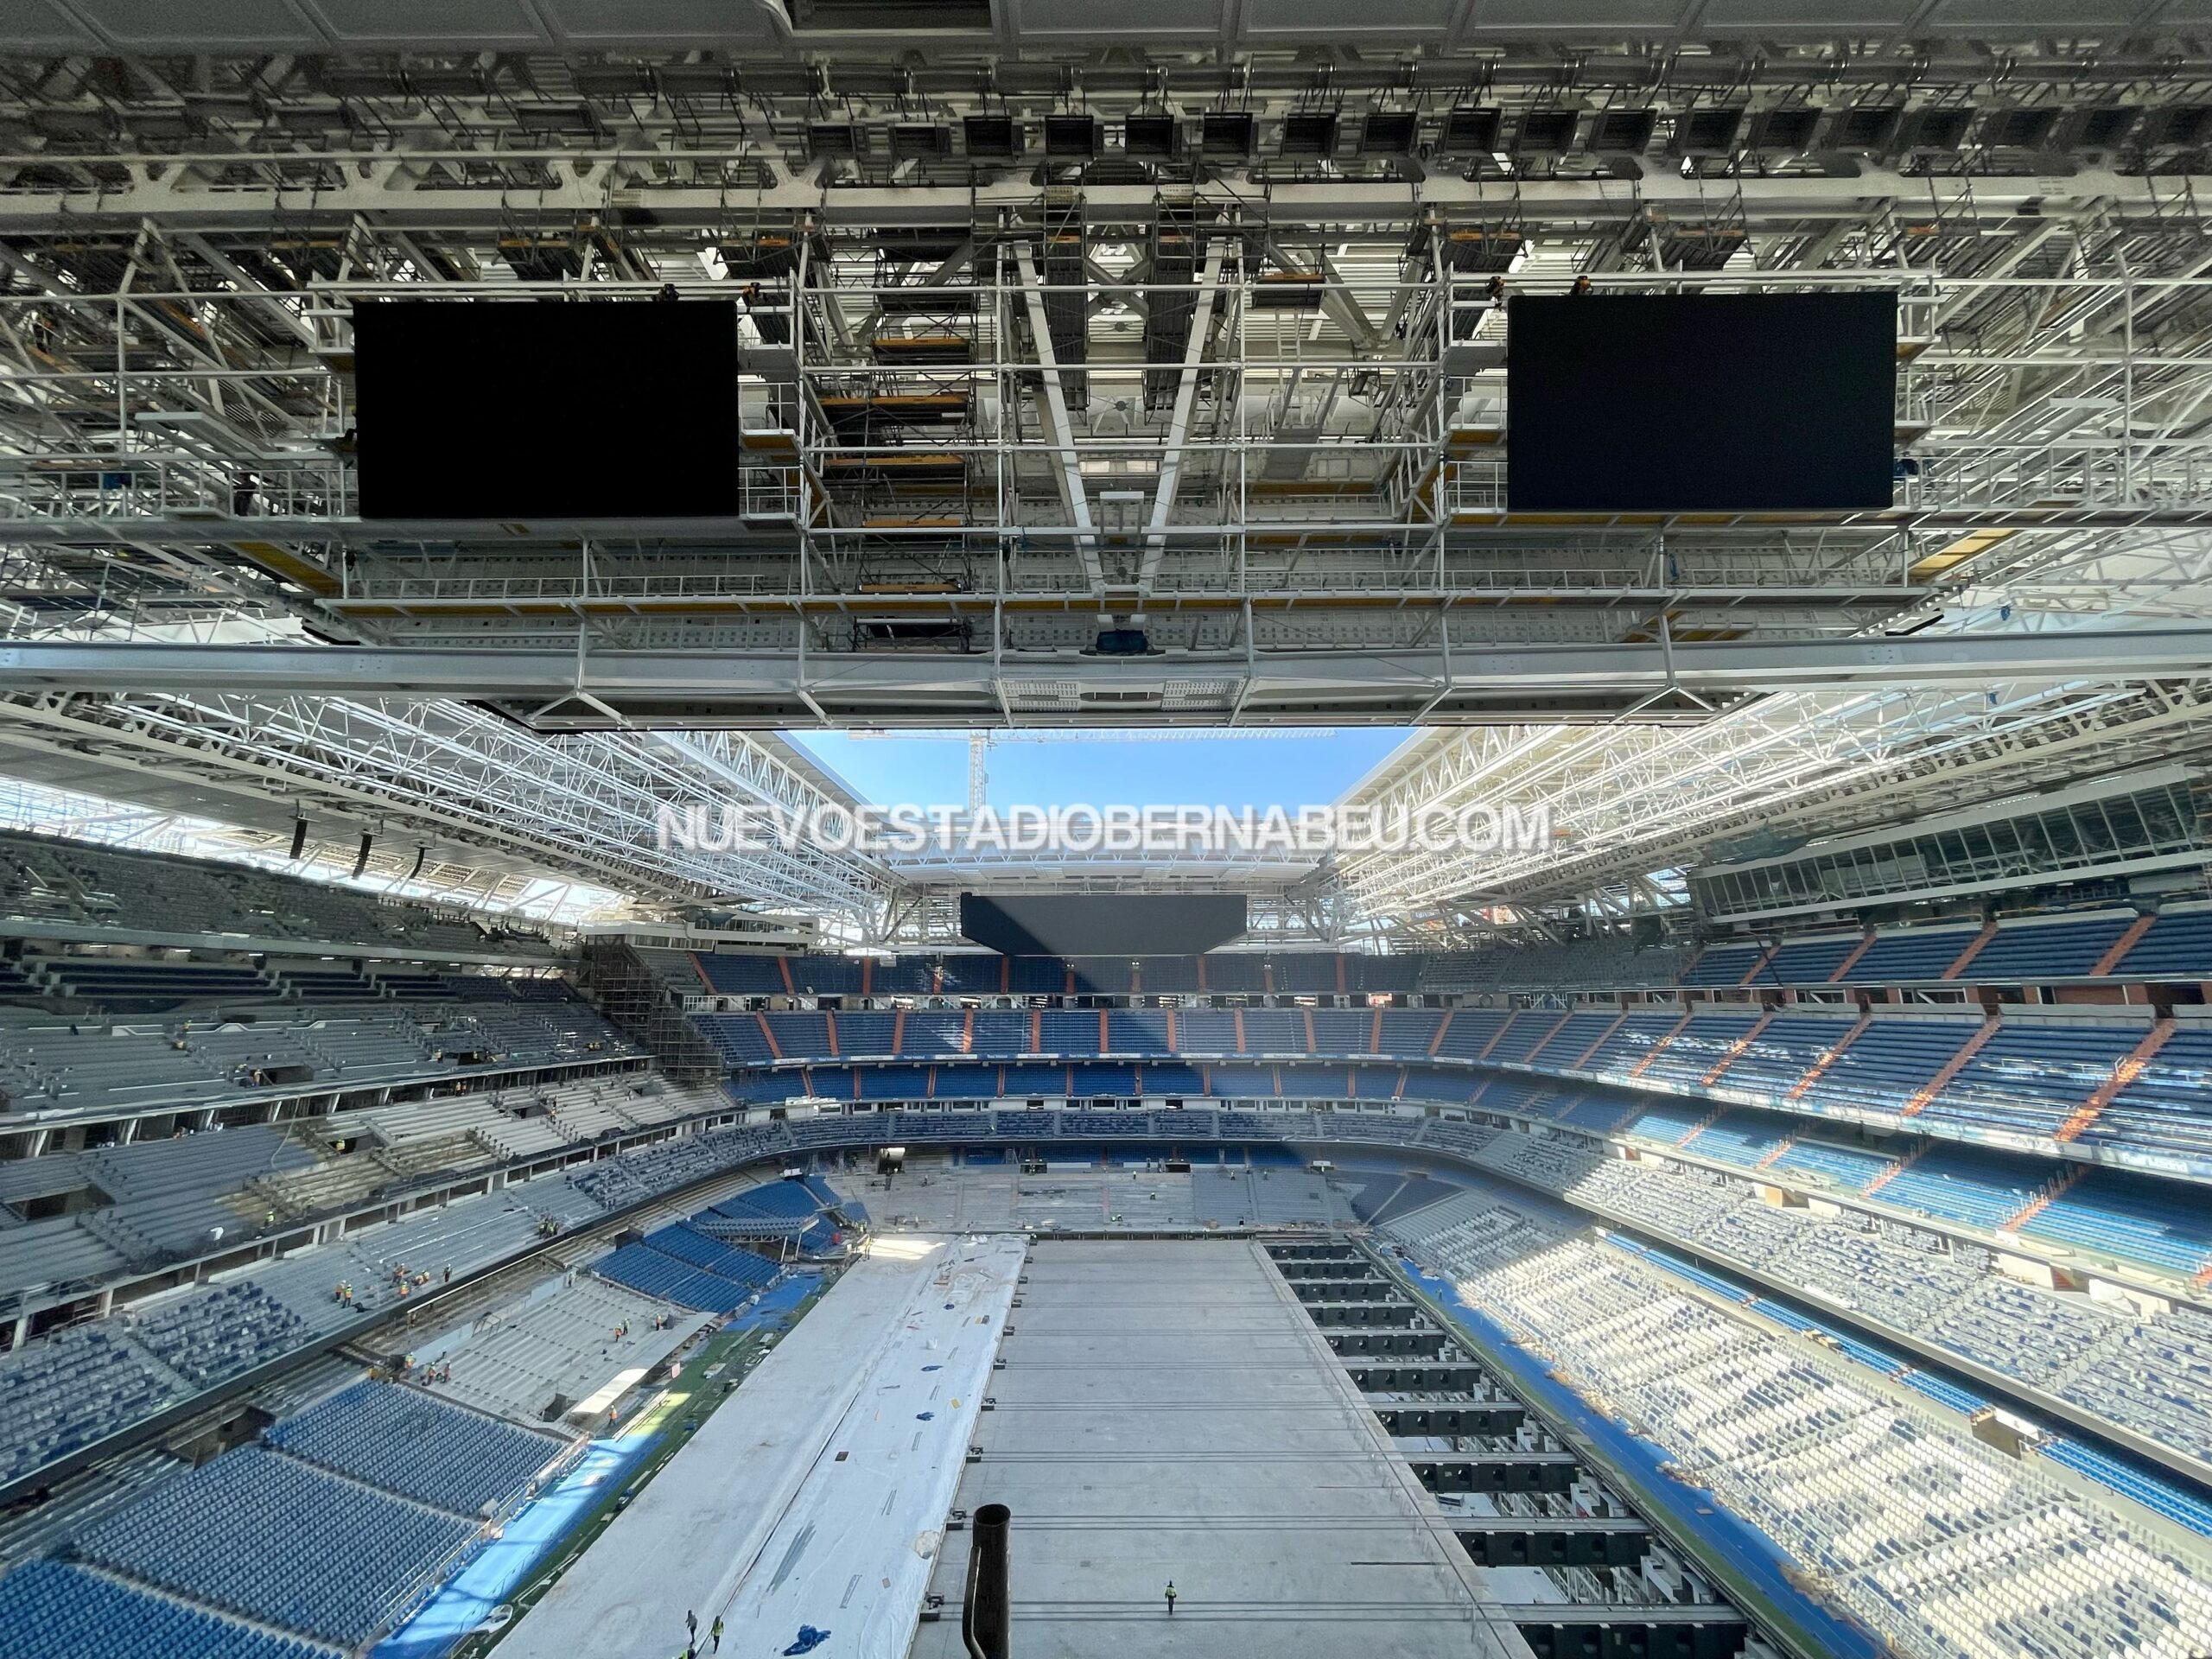 El estadio Santiago Bernabéu abre al público este mes